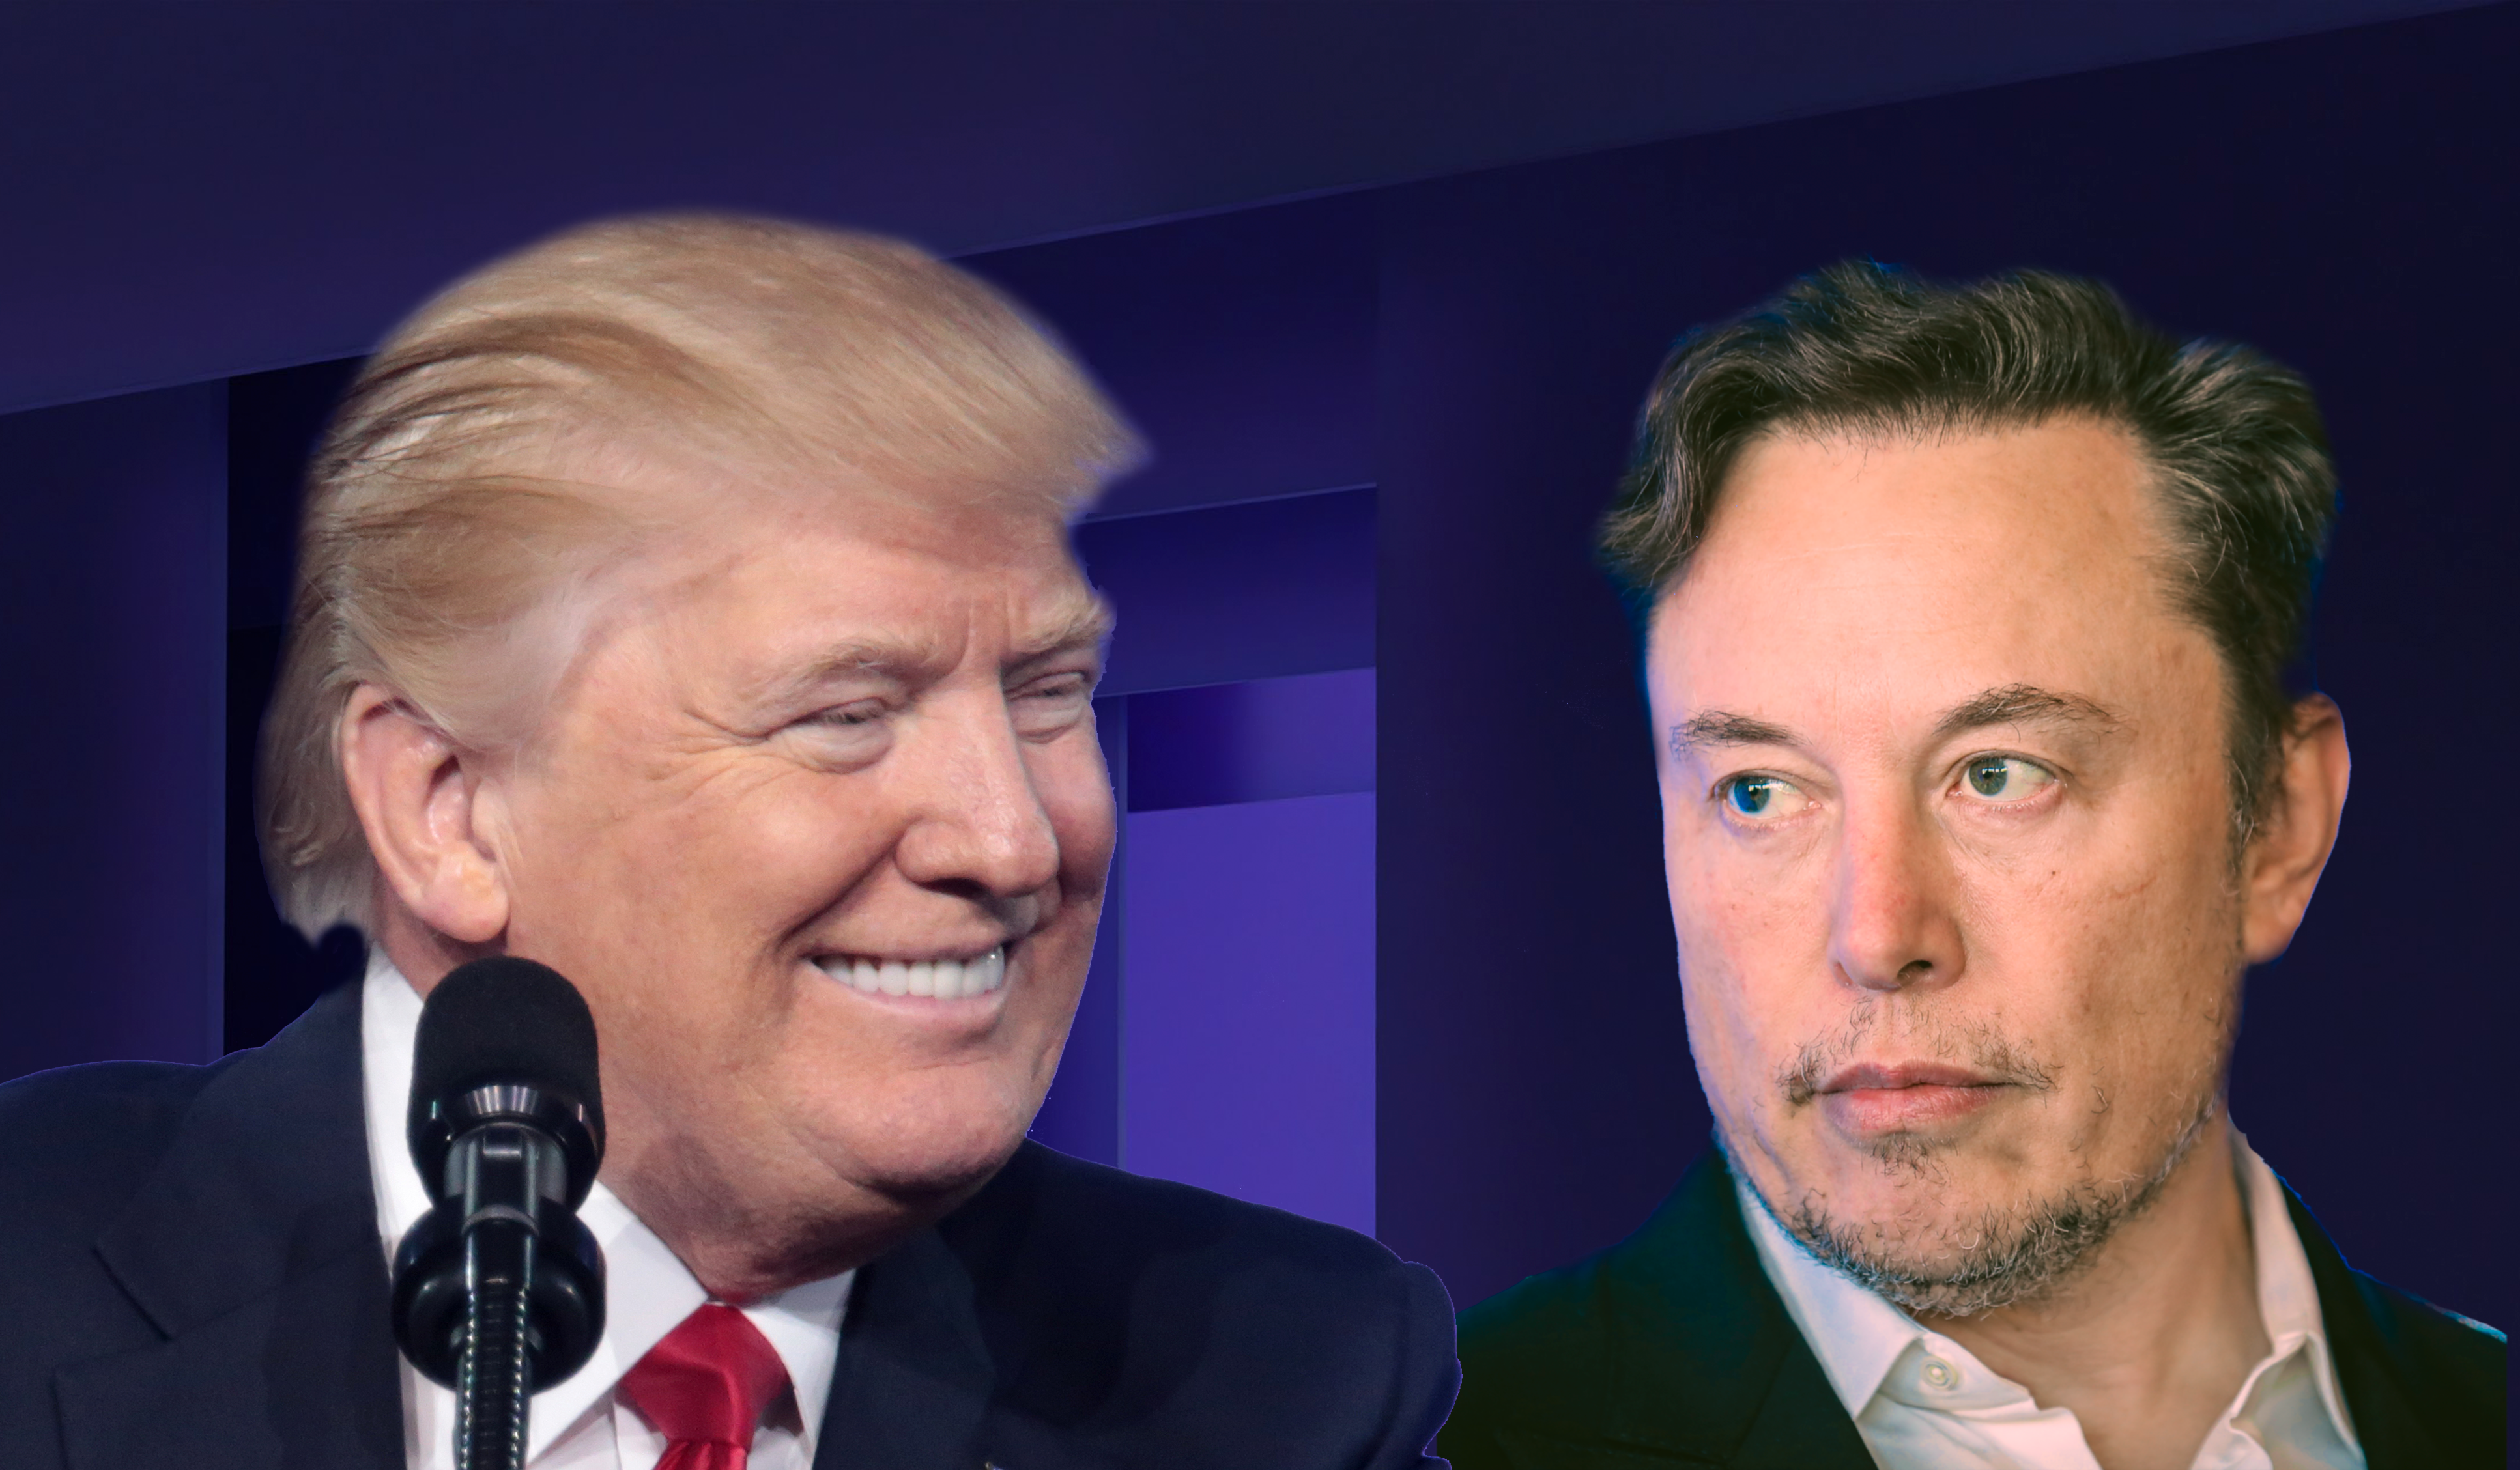 Che rapporto hanno davvero Elon Musk e Donald Trump?